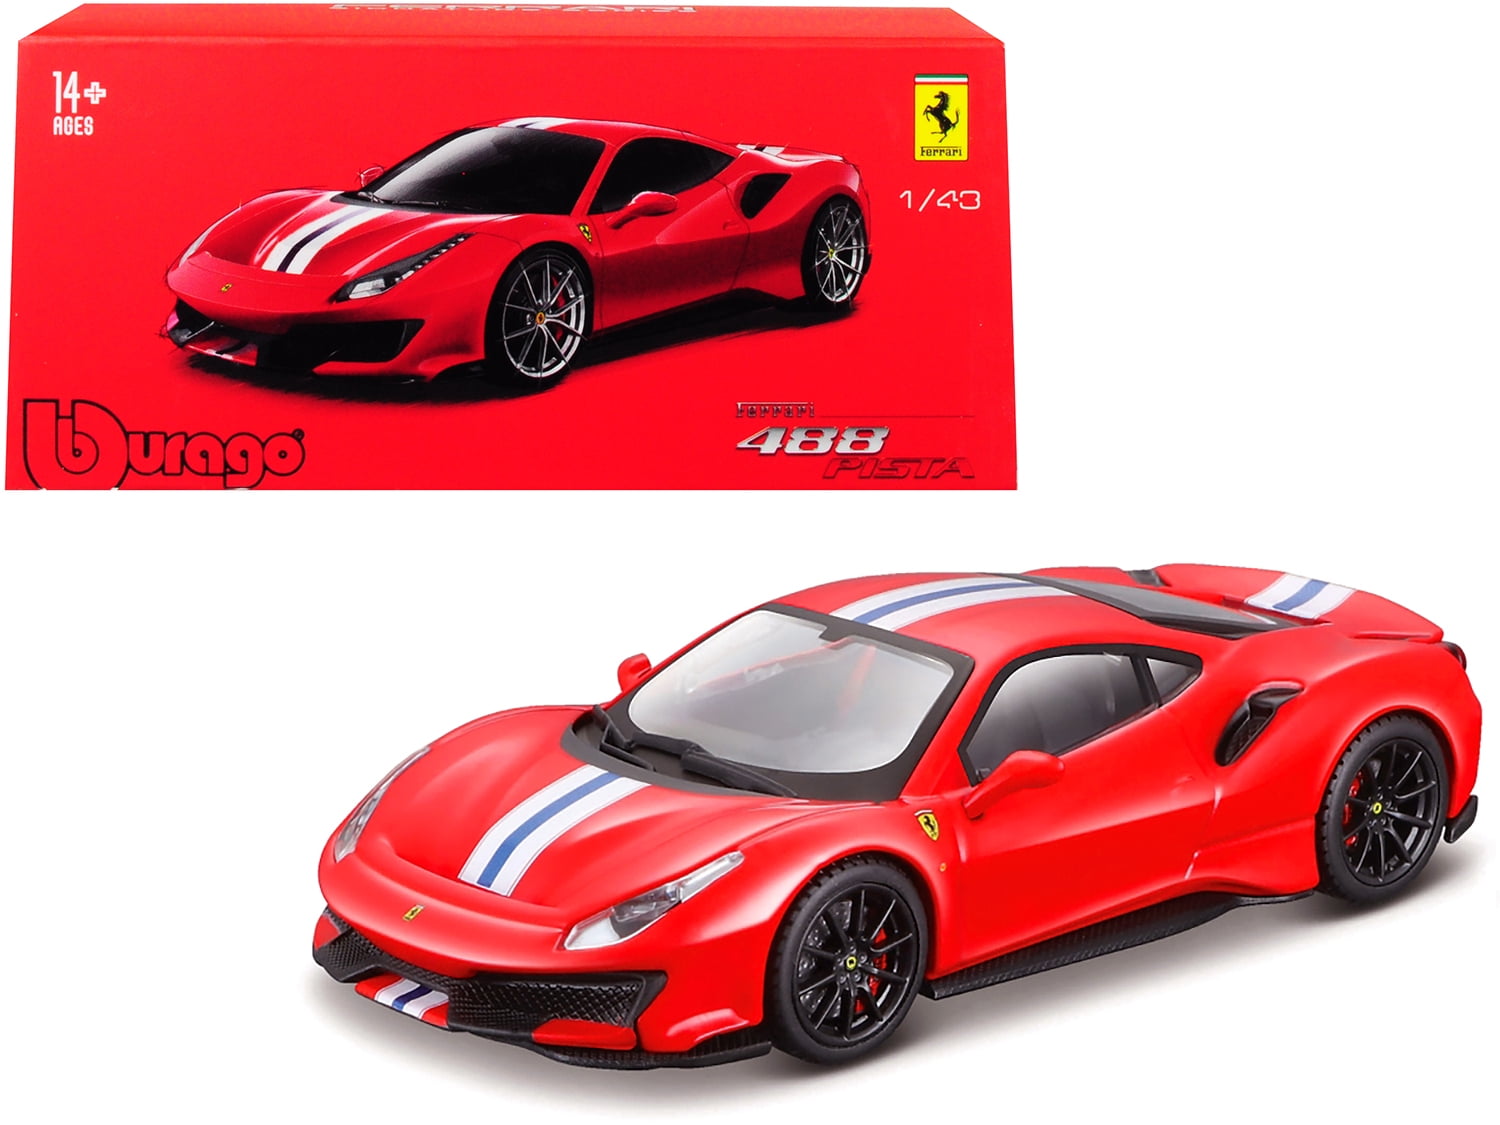 Ferrari 488GTB in Red 1-43 Scale  New in Case Signature model 